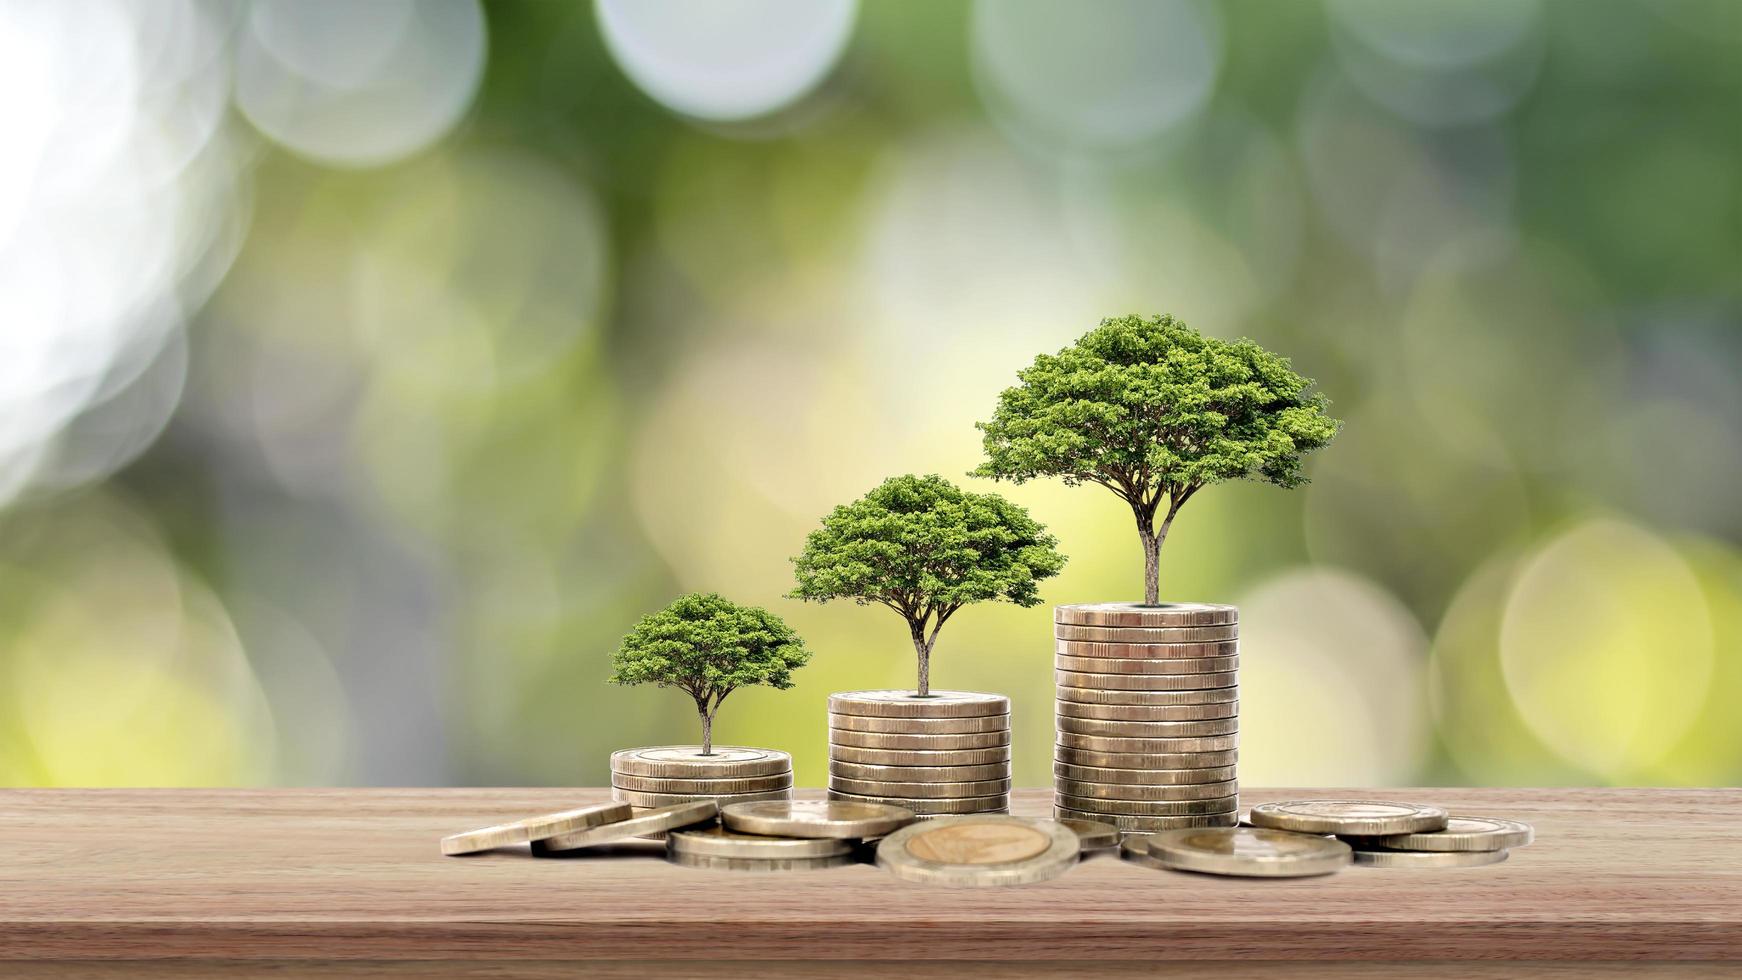 de boom groeit op een stapel geld op een houten tafel en natuurlijke achtergrond, het concept van financiële investeringen en economische expansie foto